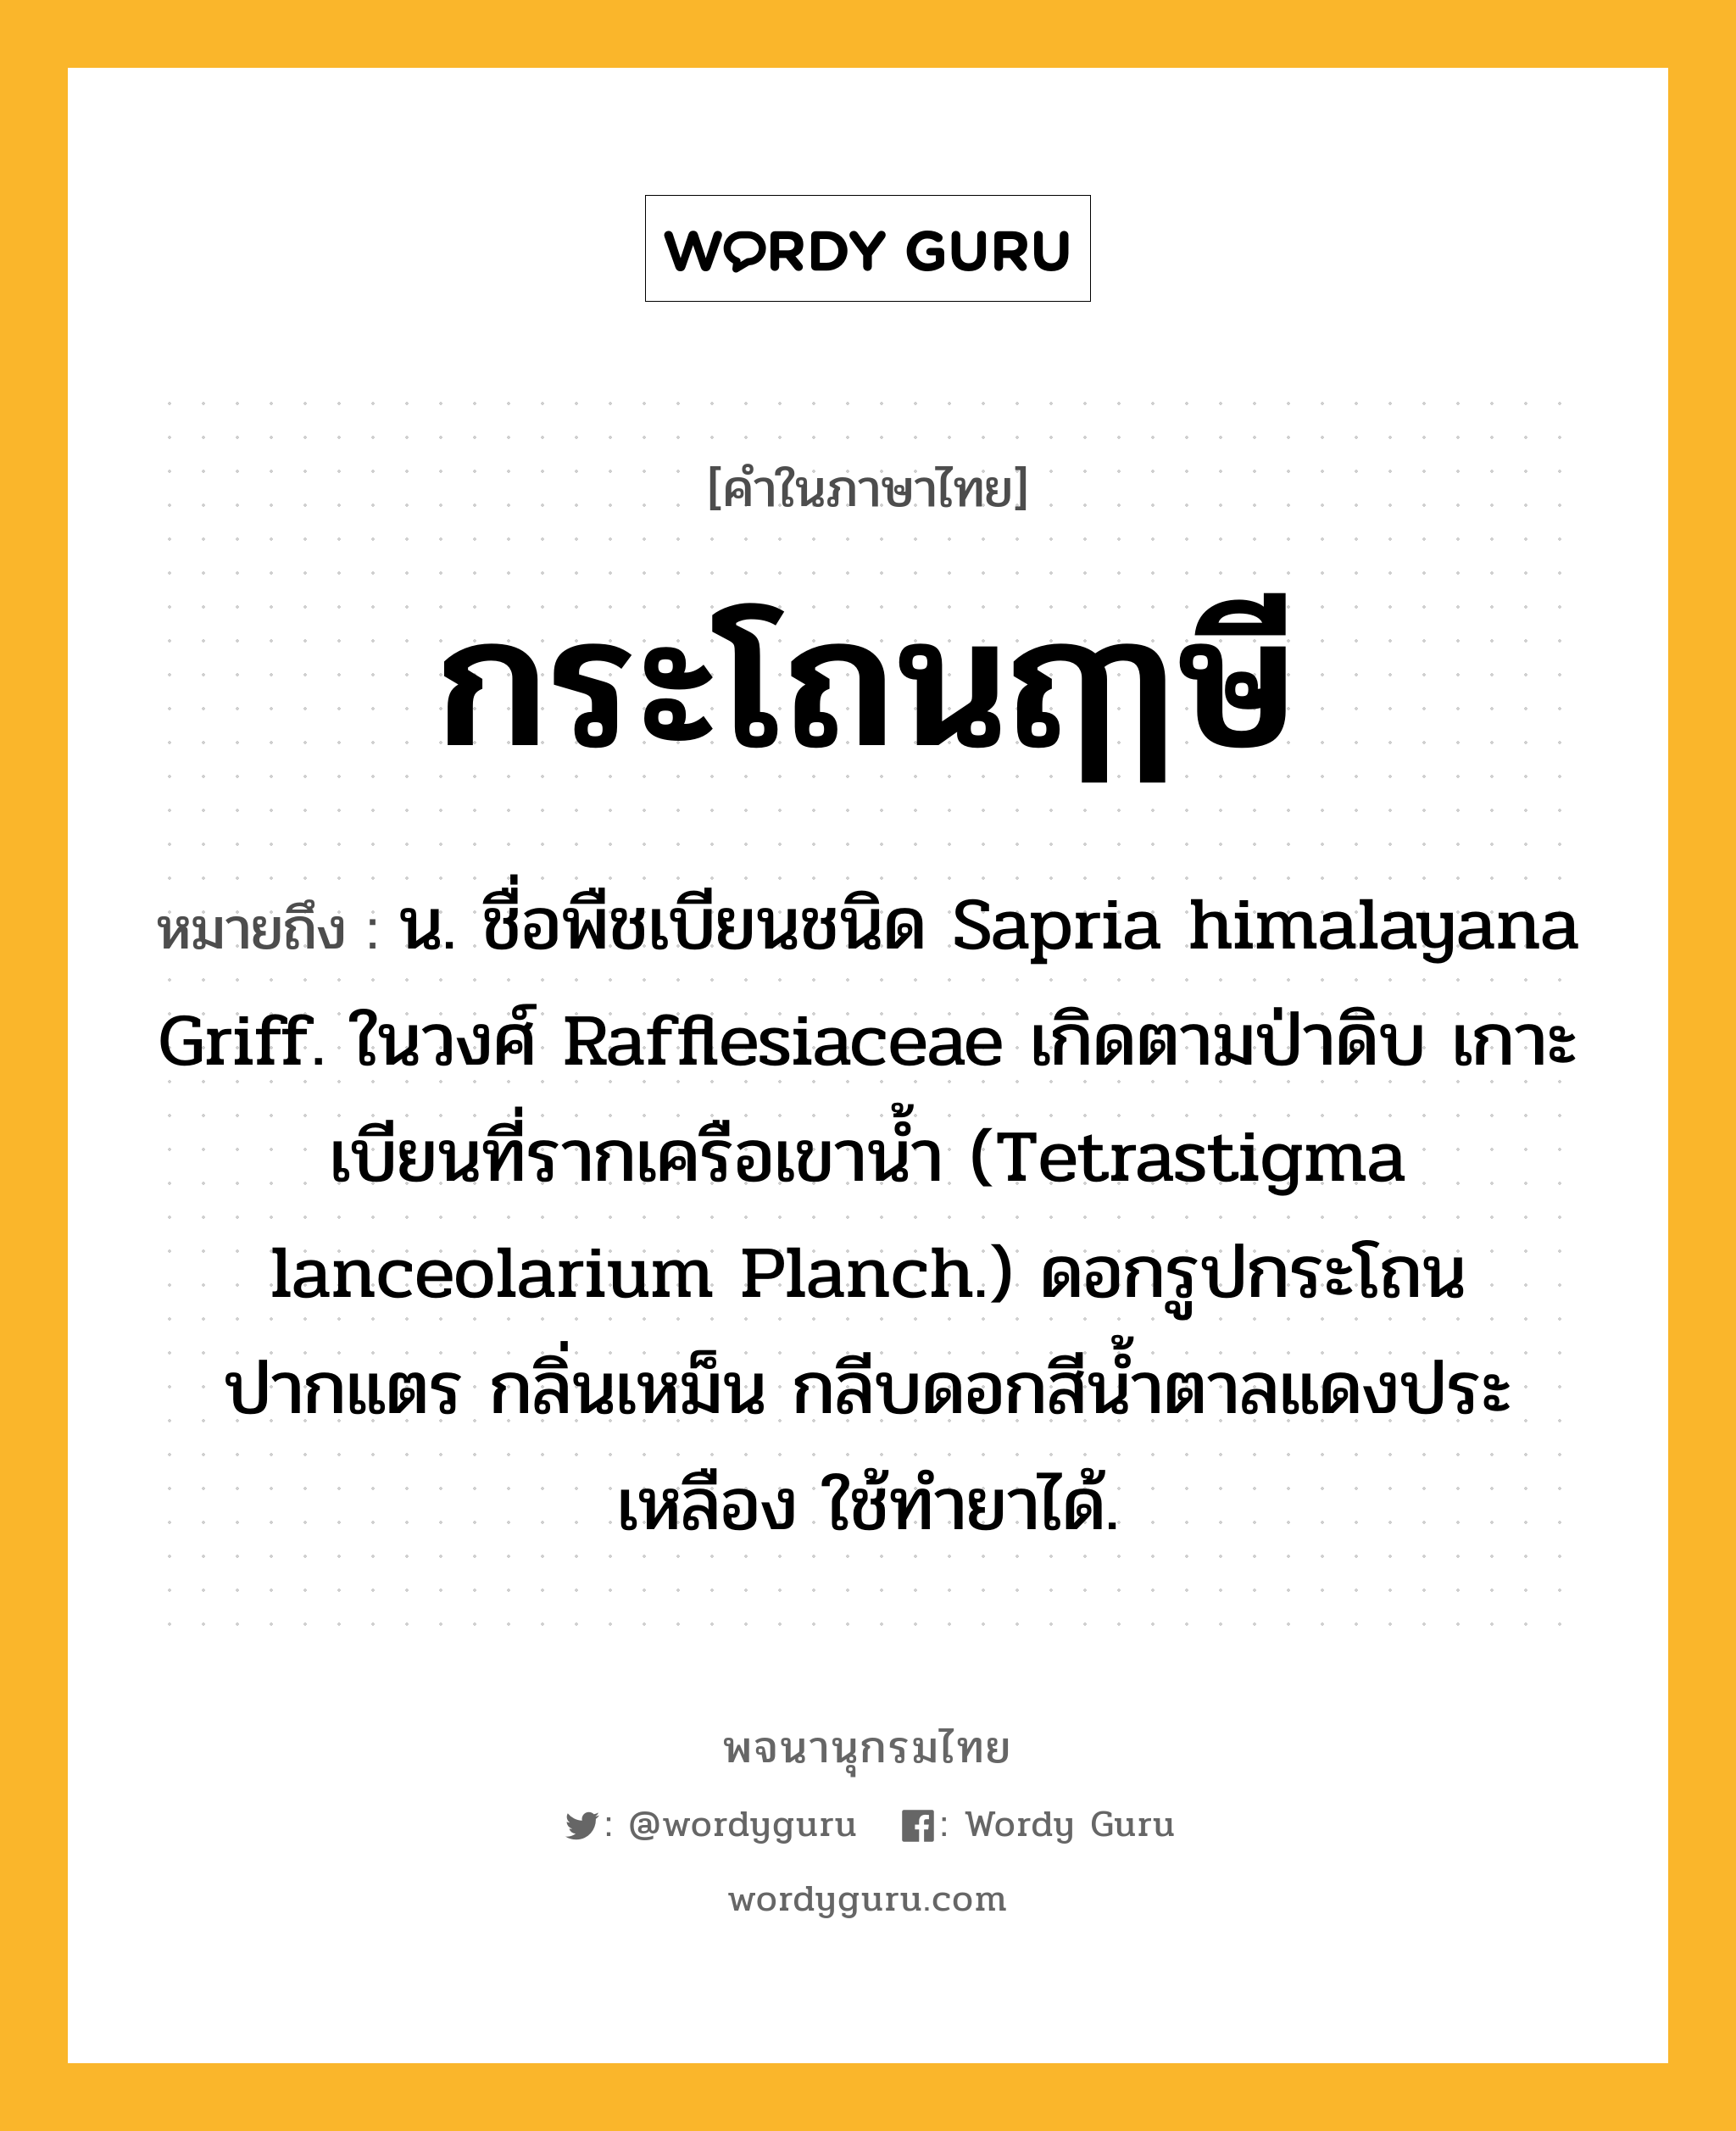 กระโถนฤๅษี หมายถึงอะไร?, คำในภาษาไทย กระโถนฤๅษี หมายถึง น. ชื่อพืชเบียนชนิด Sapria himalayana Griff. ในวงศ์ Rafflesiaceae เกิดตามป่าดิบ เกาะเบียนที่รากเครือเขานํ้า (Tetrastigma lanceolarium Planch.) ดอกรูปกระโถนปากแตร กลิ่นเหม็น กลีบดอกสีนํ้าตาลแดงประเหลือง ใช้ทํายาได้.